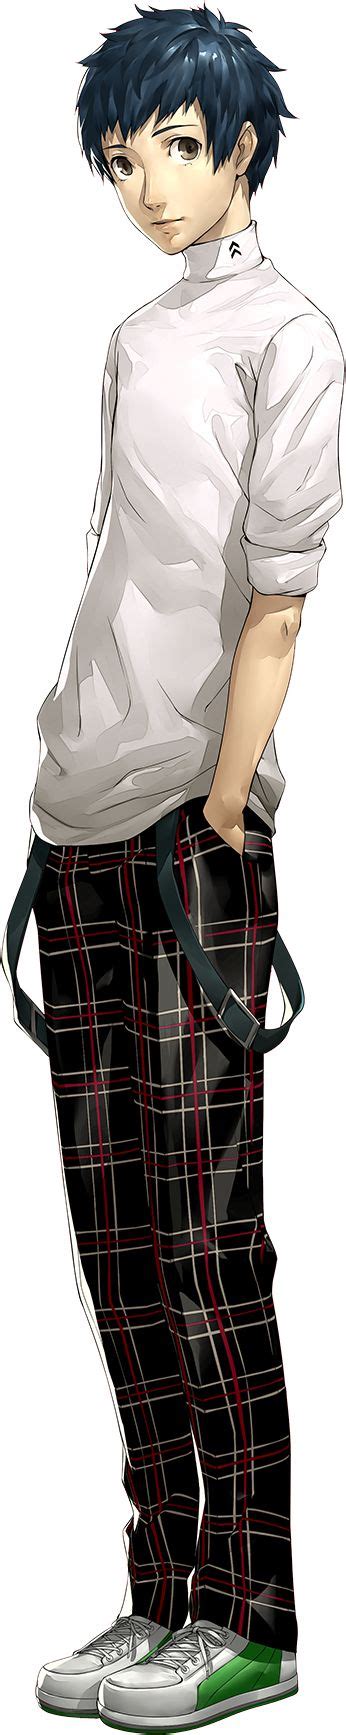 Persona 5 Yuuki Mishima Persona 5 Persona Character Design Inspiration